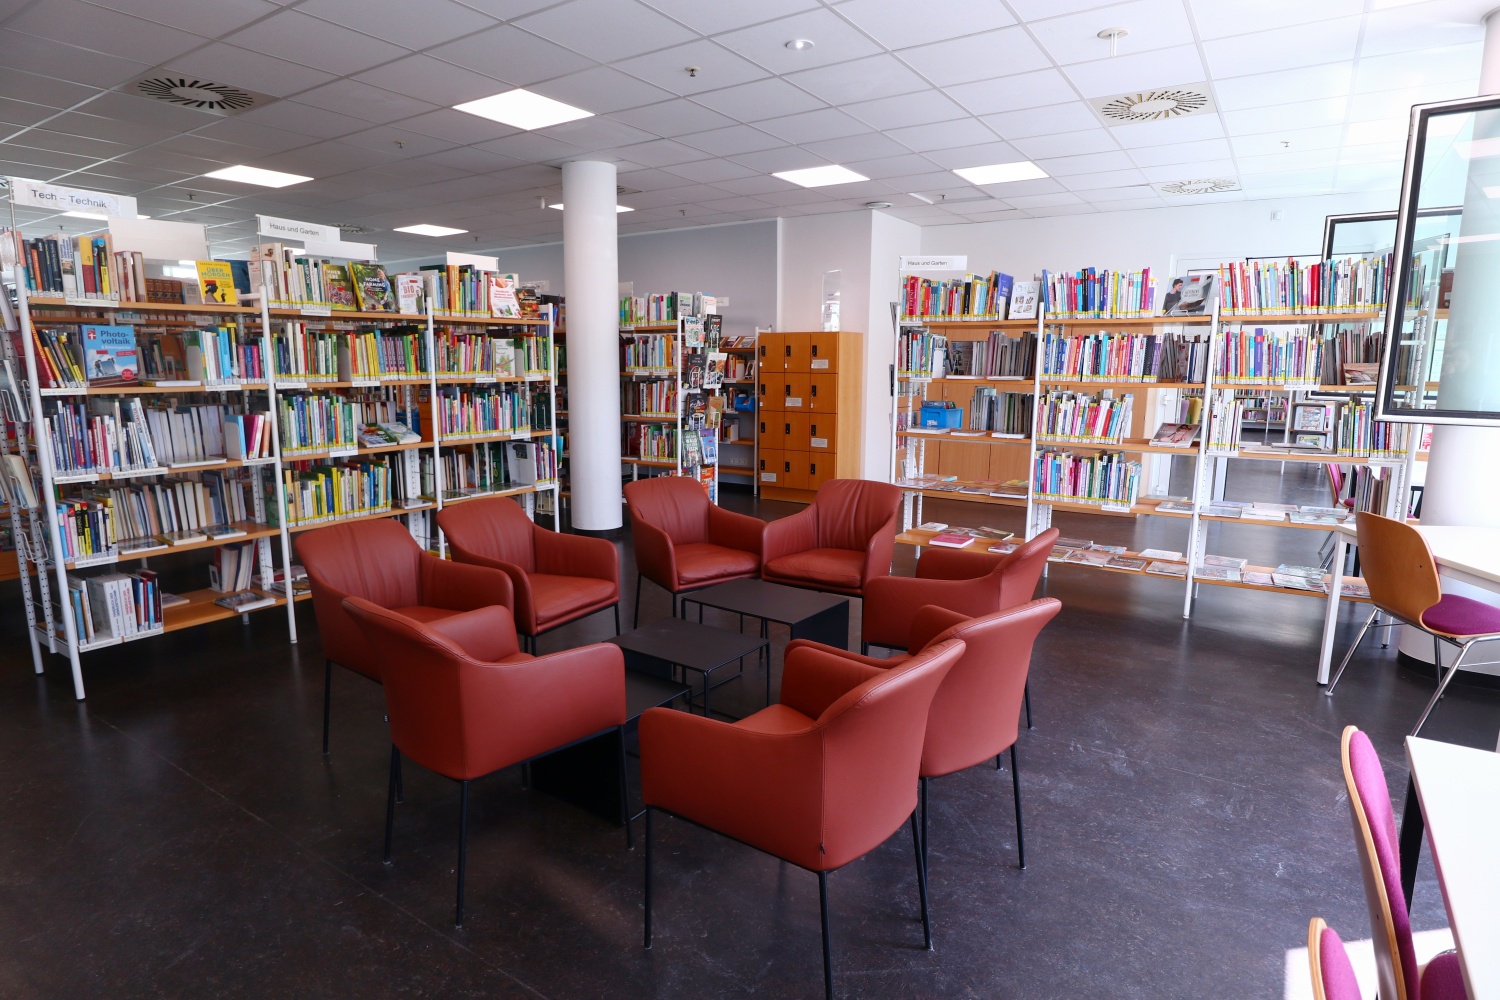 Sitzgruppe in der Bibliothek mit roten Sesseln